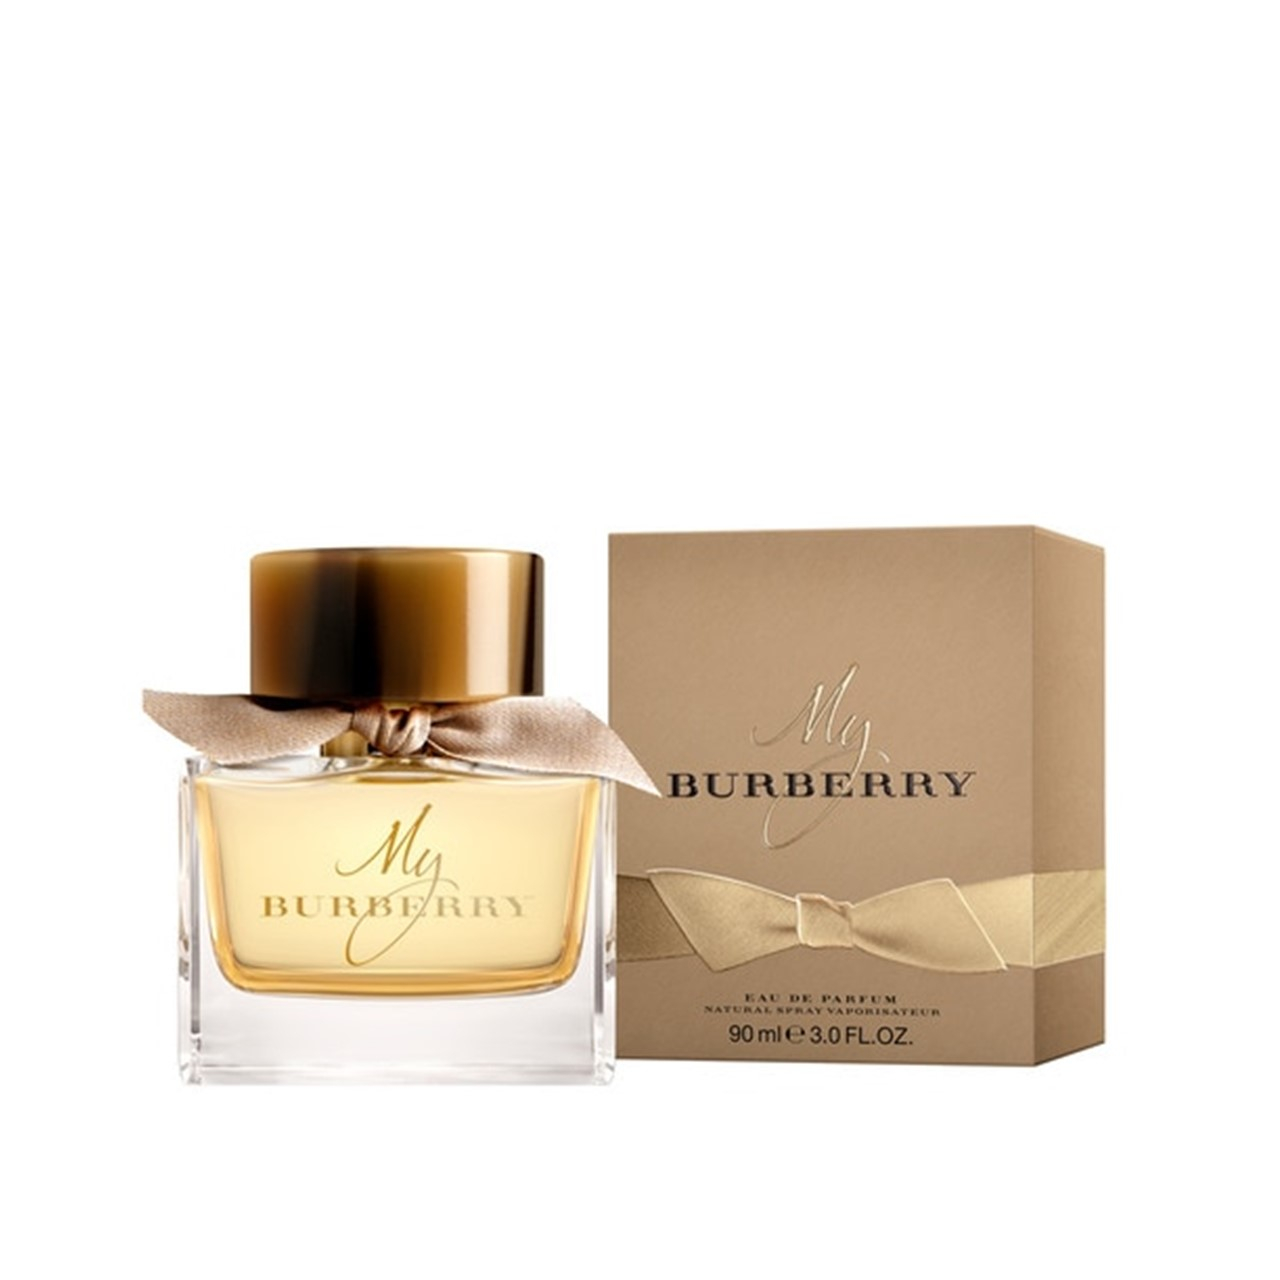 Burberry My Burberry Eau de Parfum 90ml (3.0floz)